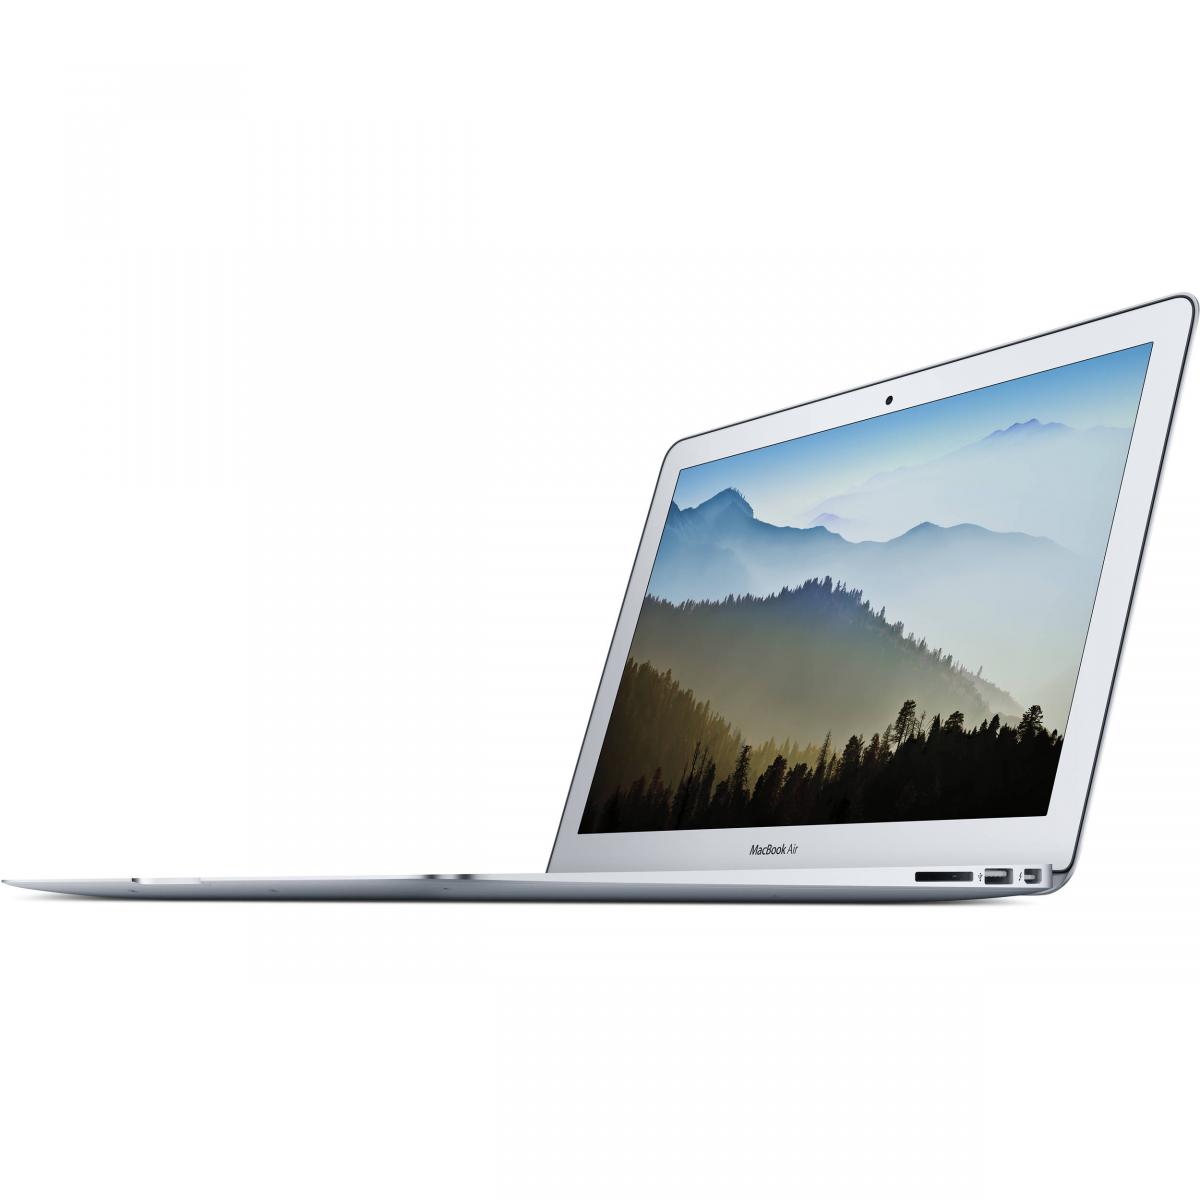  لپ تاپ 13 اینچی اپل مدل MacBook Air MQD32 2017